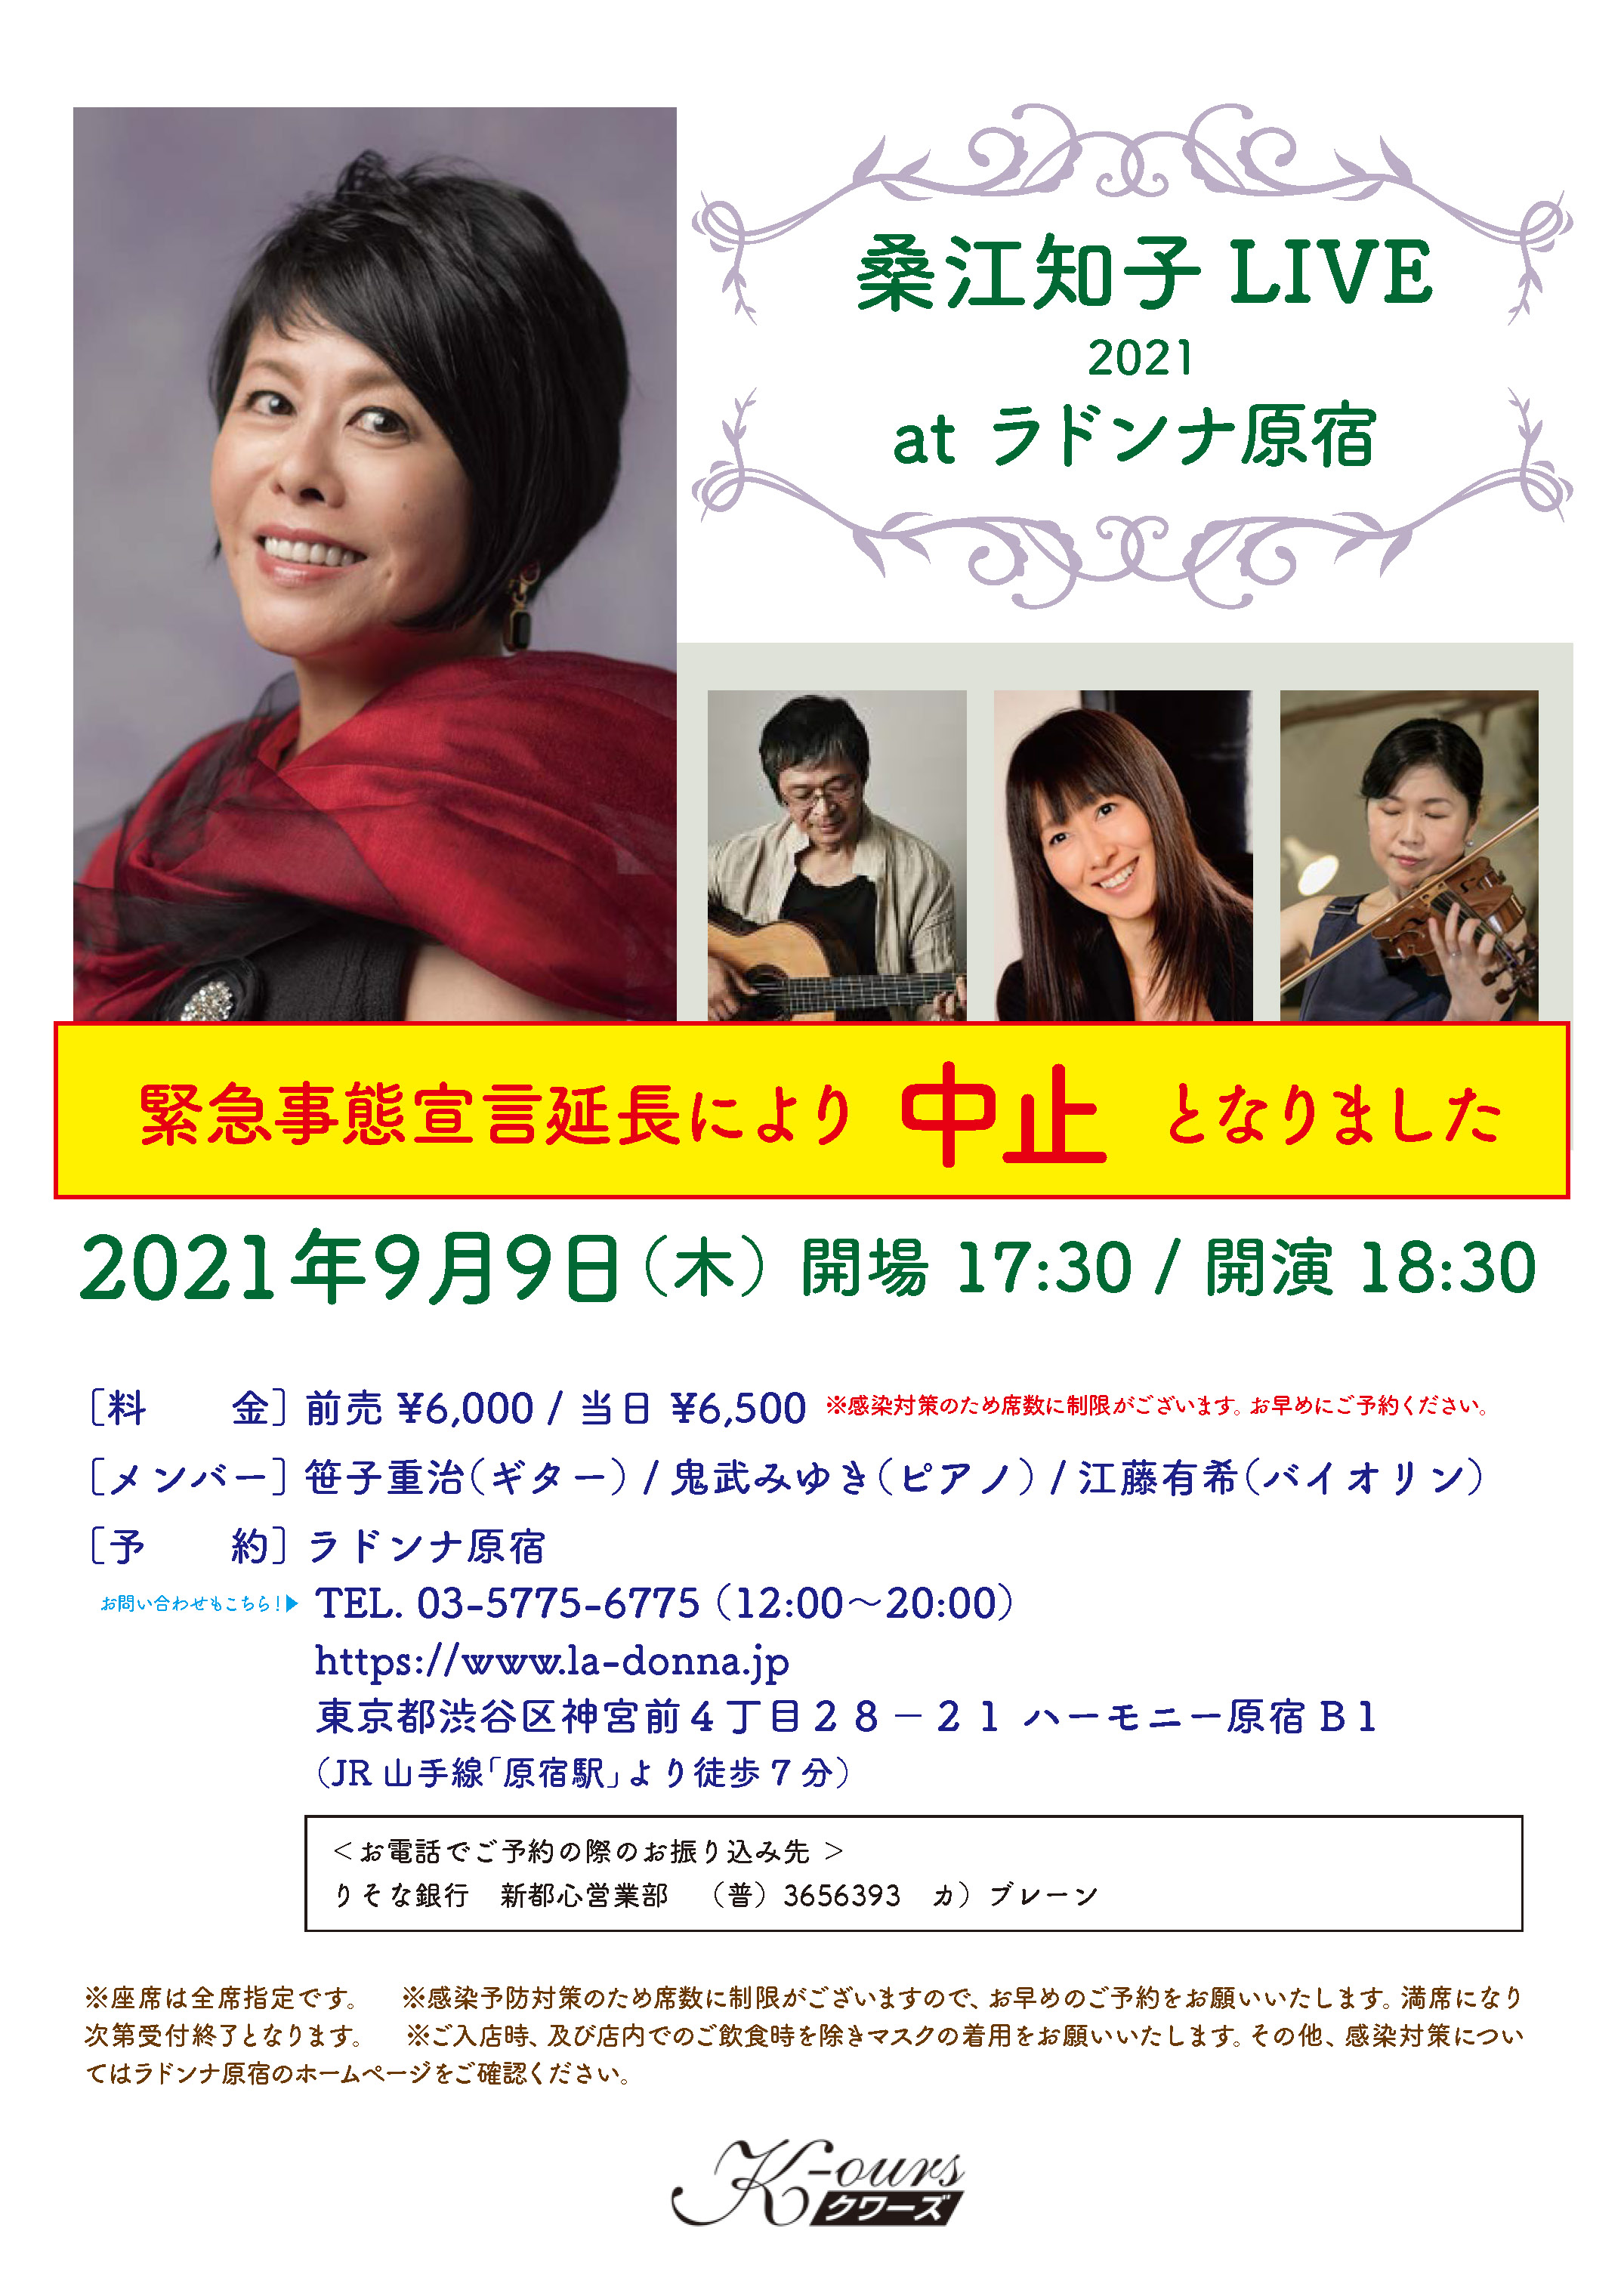 【公演中止】桑江知子 LIVE 2021 at ラドンナ原宿